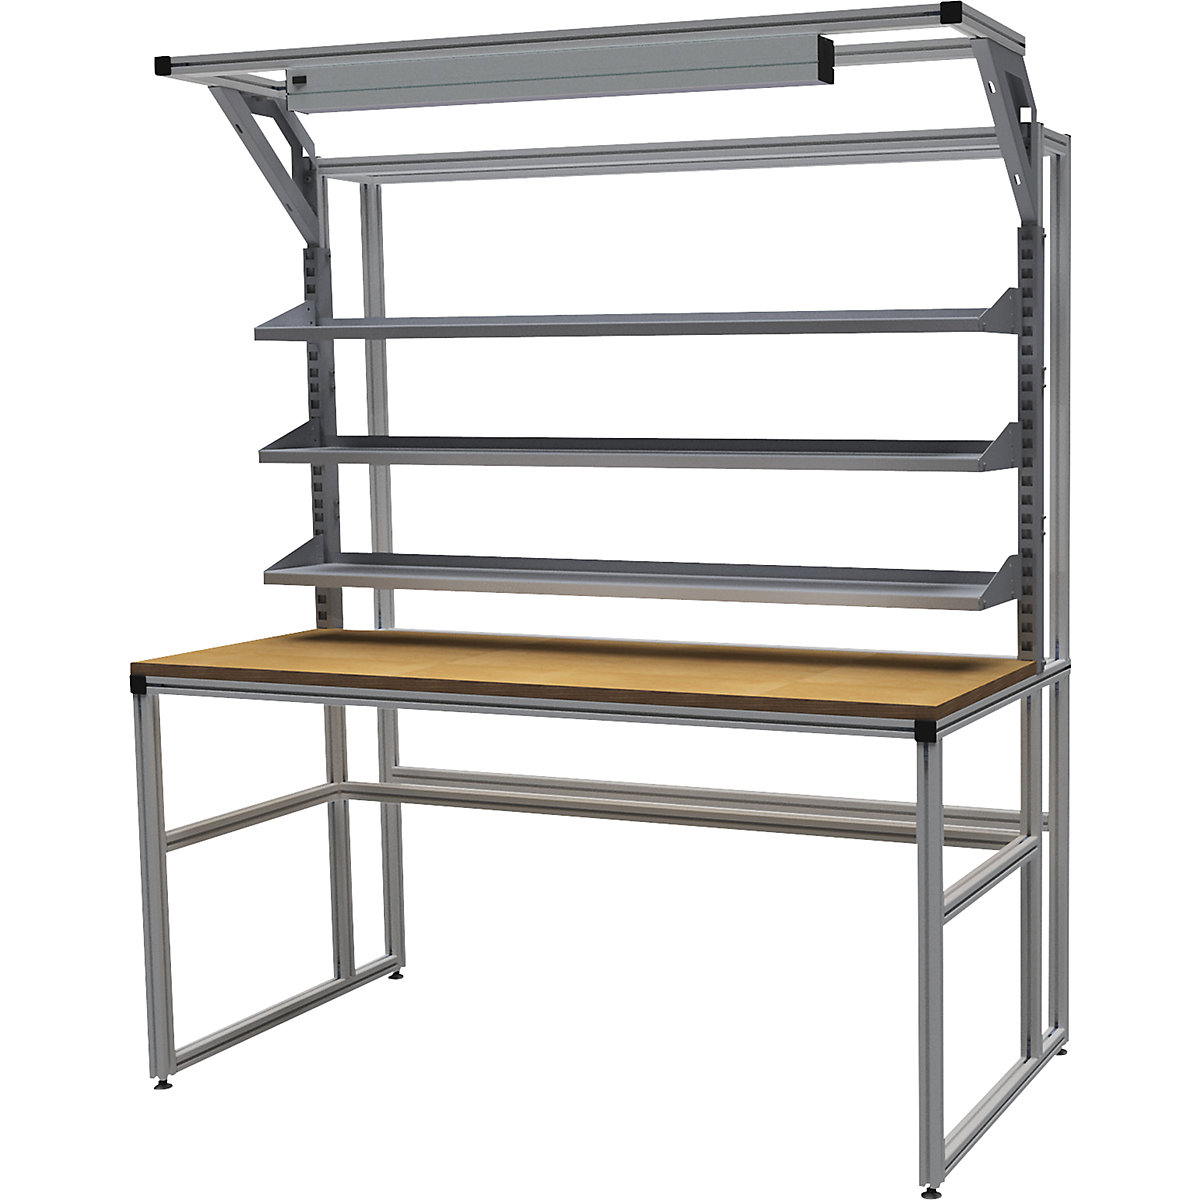 Stół warsztatowy aluminiowy workalu® z modułem systemowym, jednostronny – bedrunka hirth